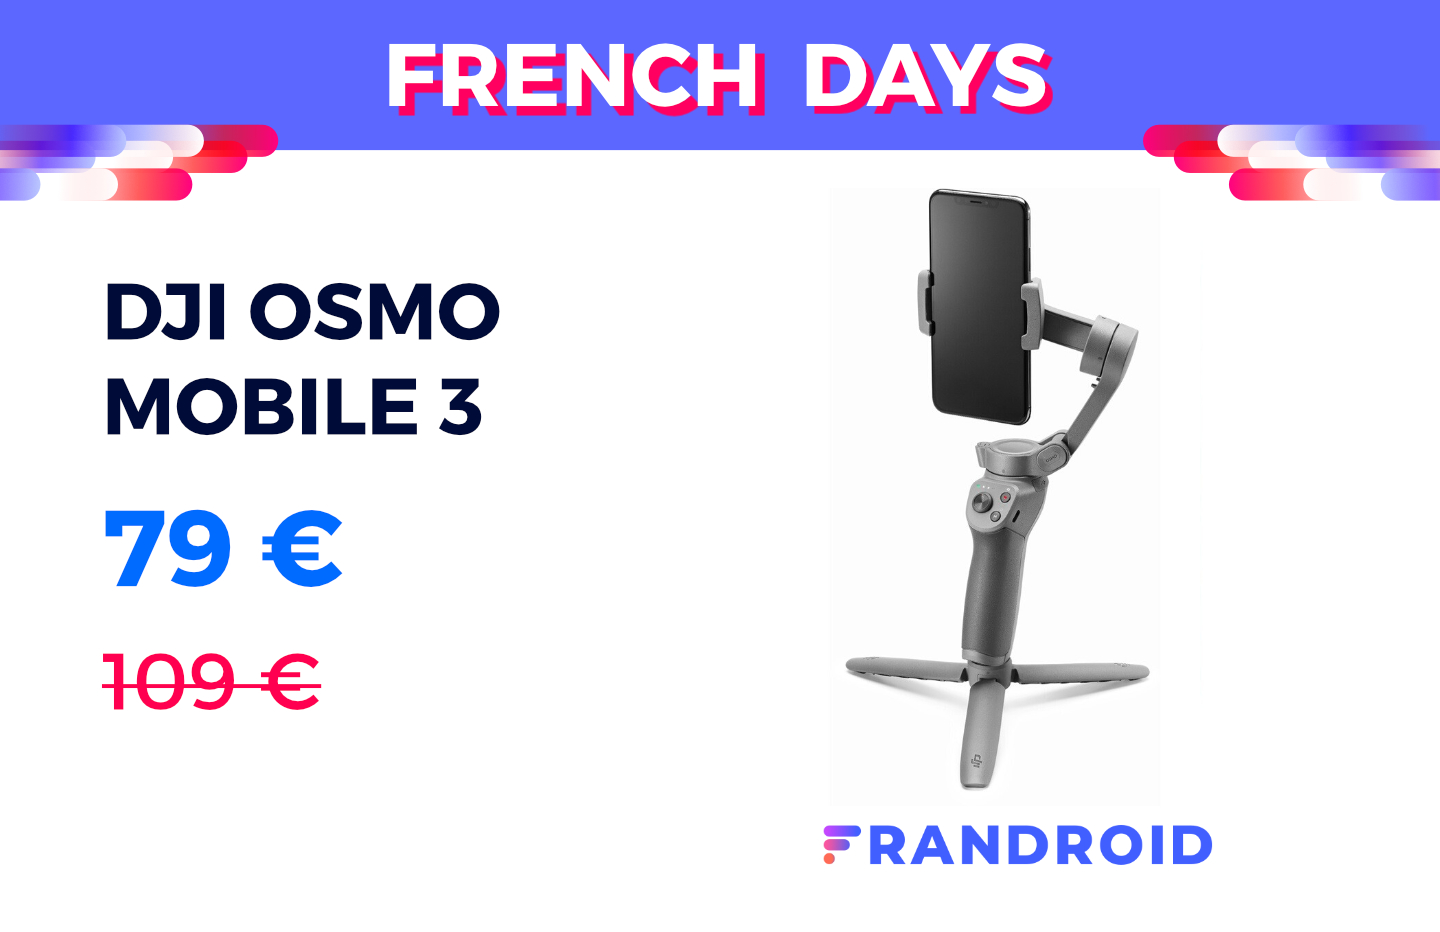 L’excellent stabilisateur DJI Osmo Mobile 3 est à prix réduit pour les French Days